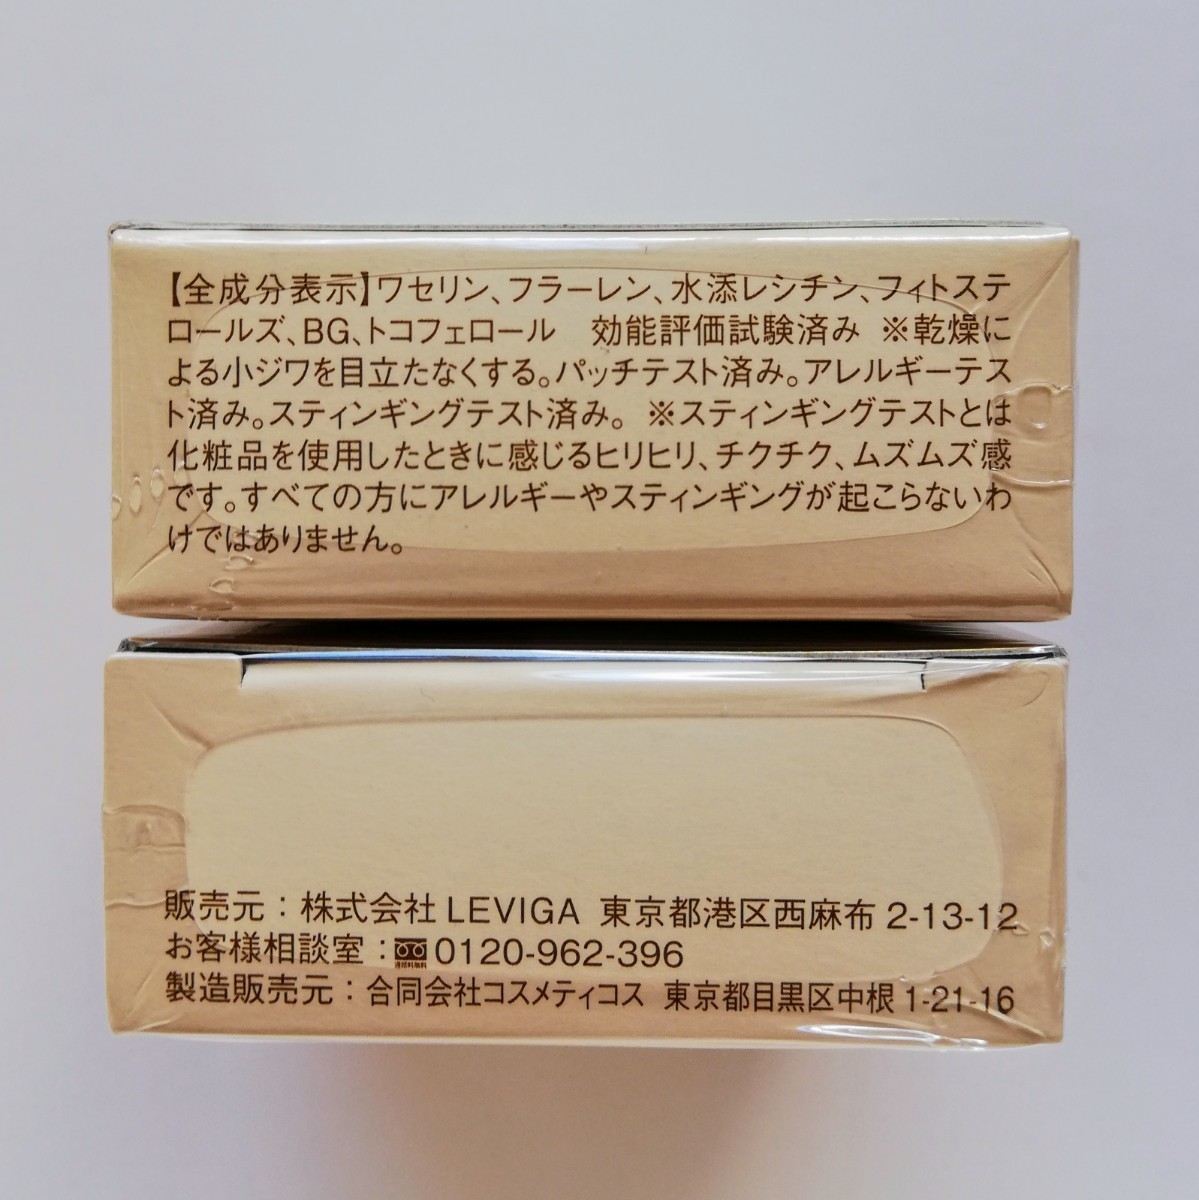 【定価6580円x2個】LEVIGAコンセントレイトバーム 敏感肌専用保湿クリーム 